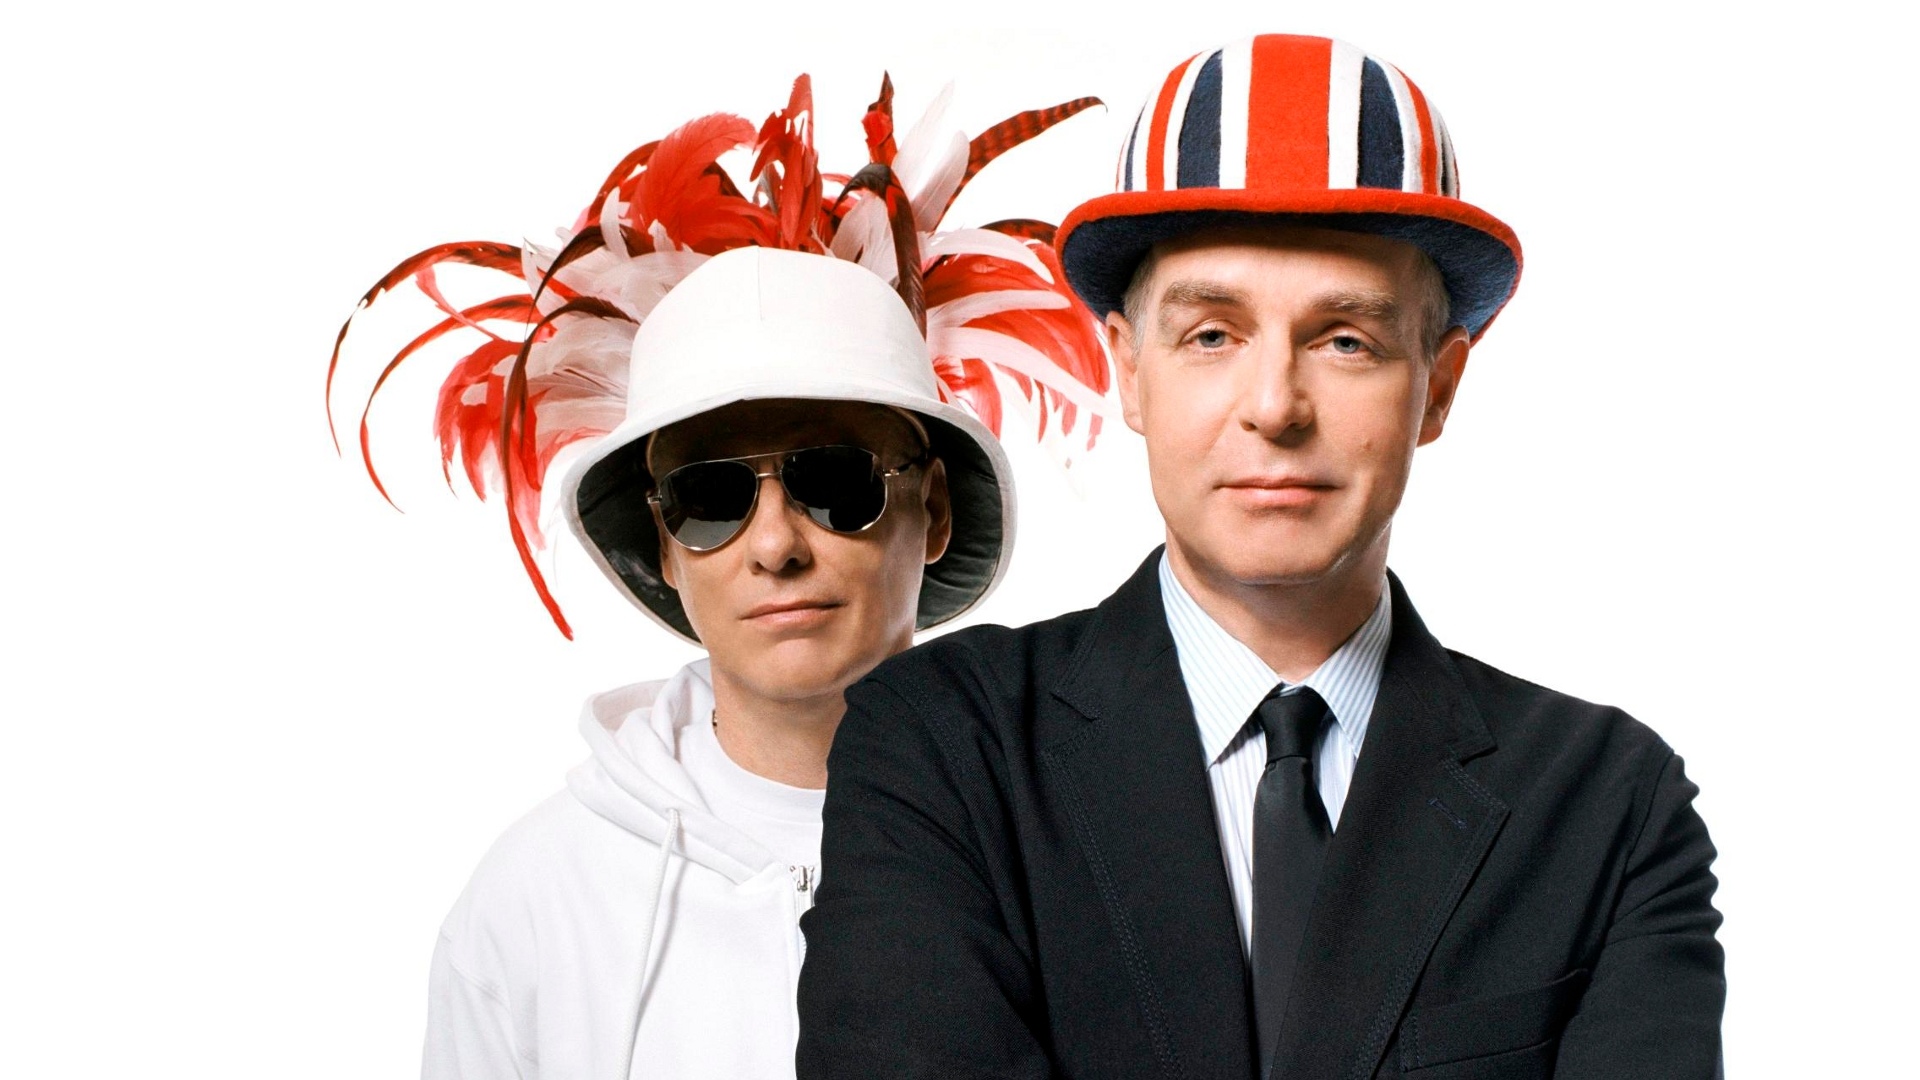 Pet Shop Boys: ismét újrakiadások a láthatáron